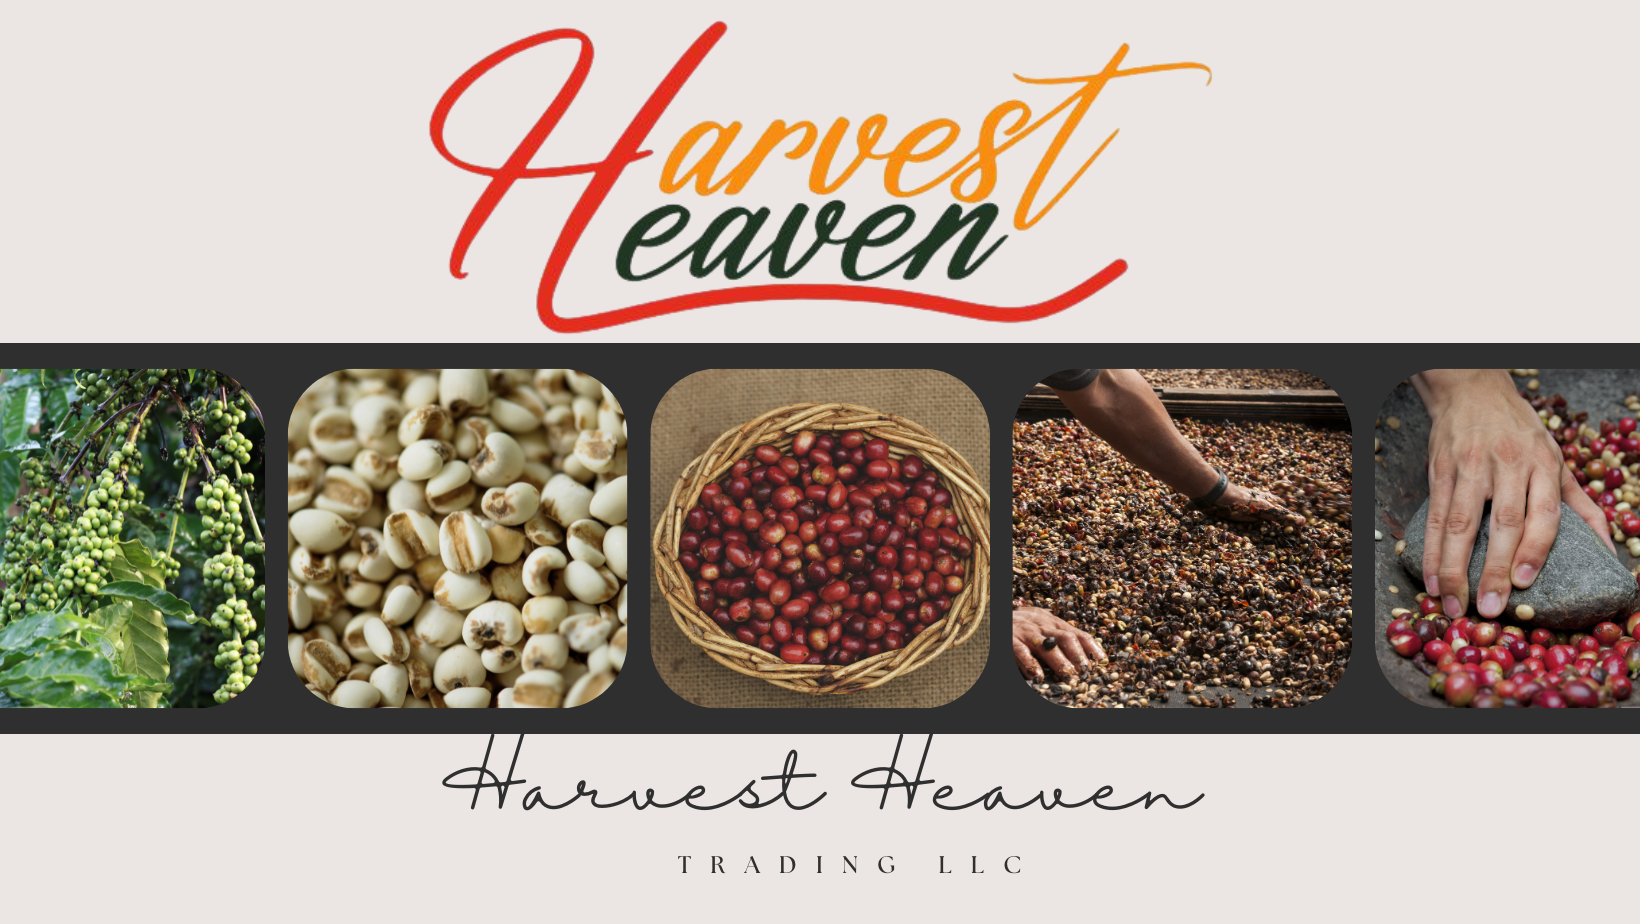 Harvest Heaven Trading LLC